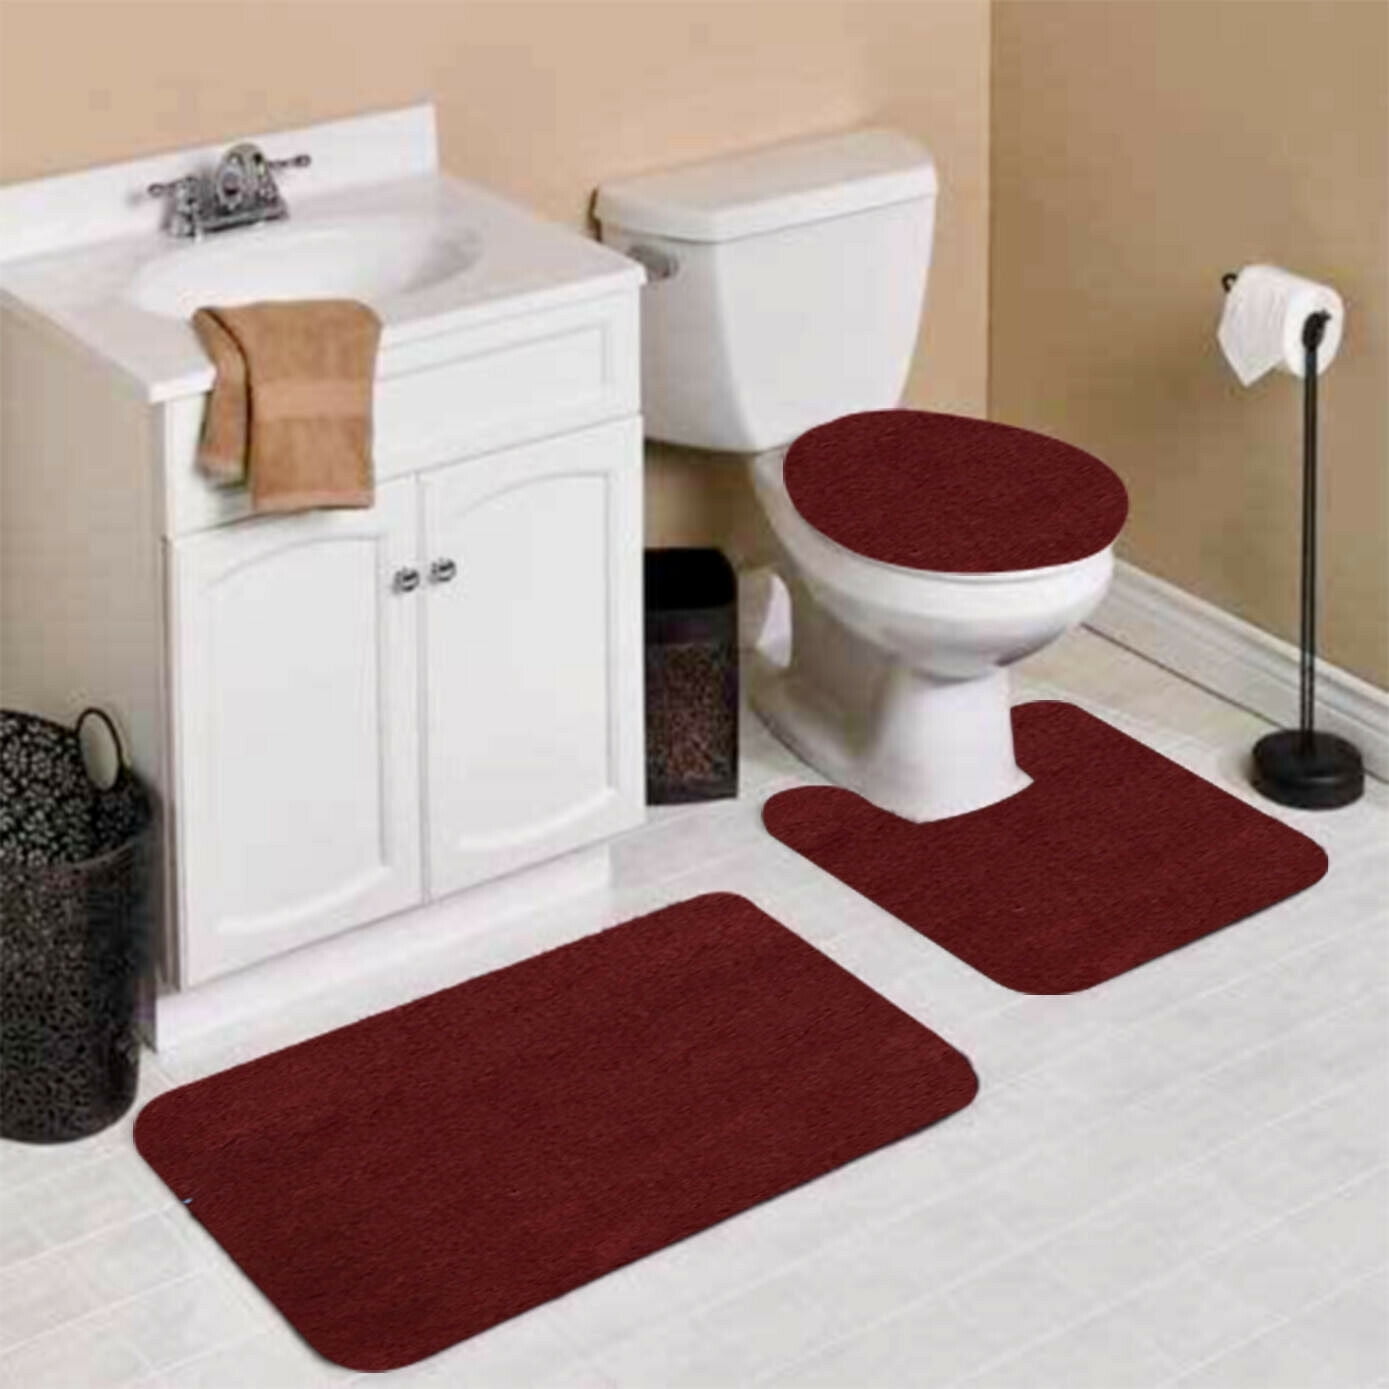 3PCS/Set Marble Pattern Bath Non-Slip Rug Toilet Lid Cover Plus 1 Bath Mat 